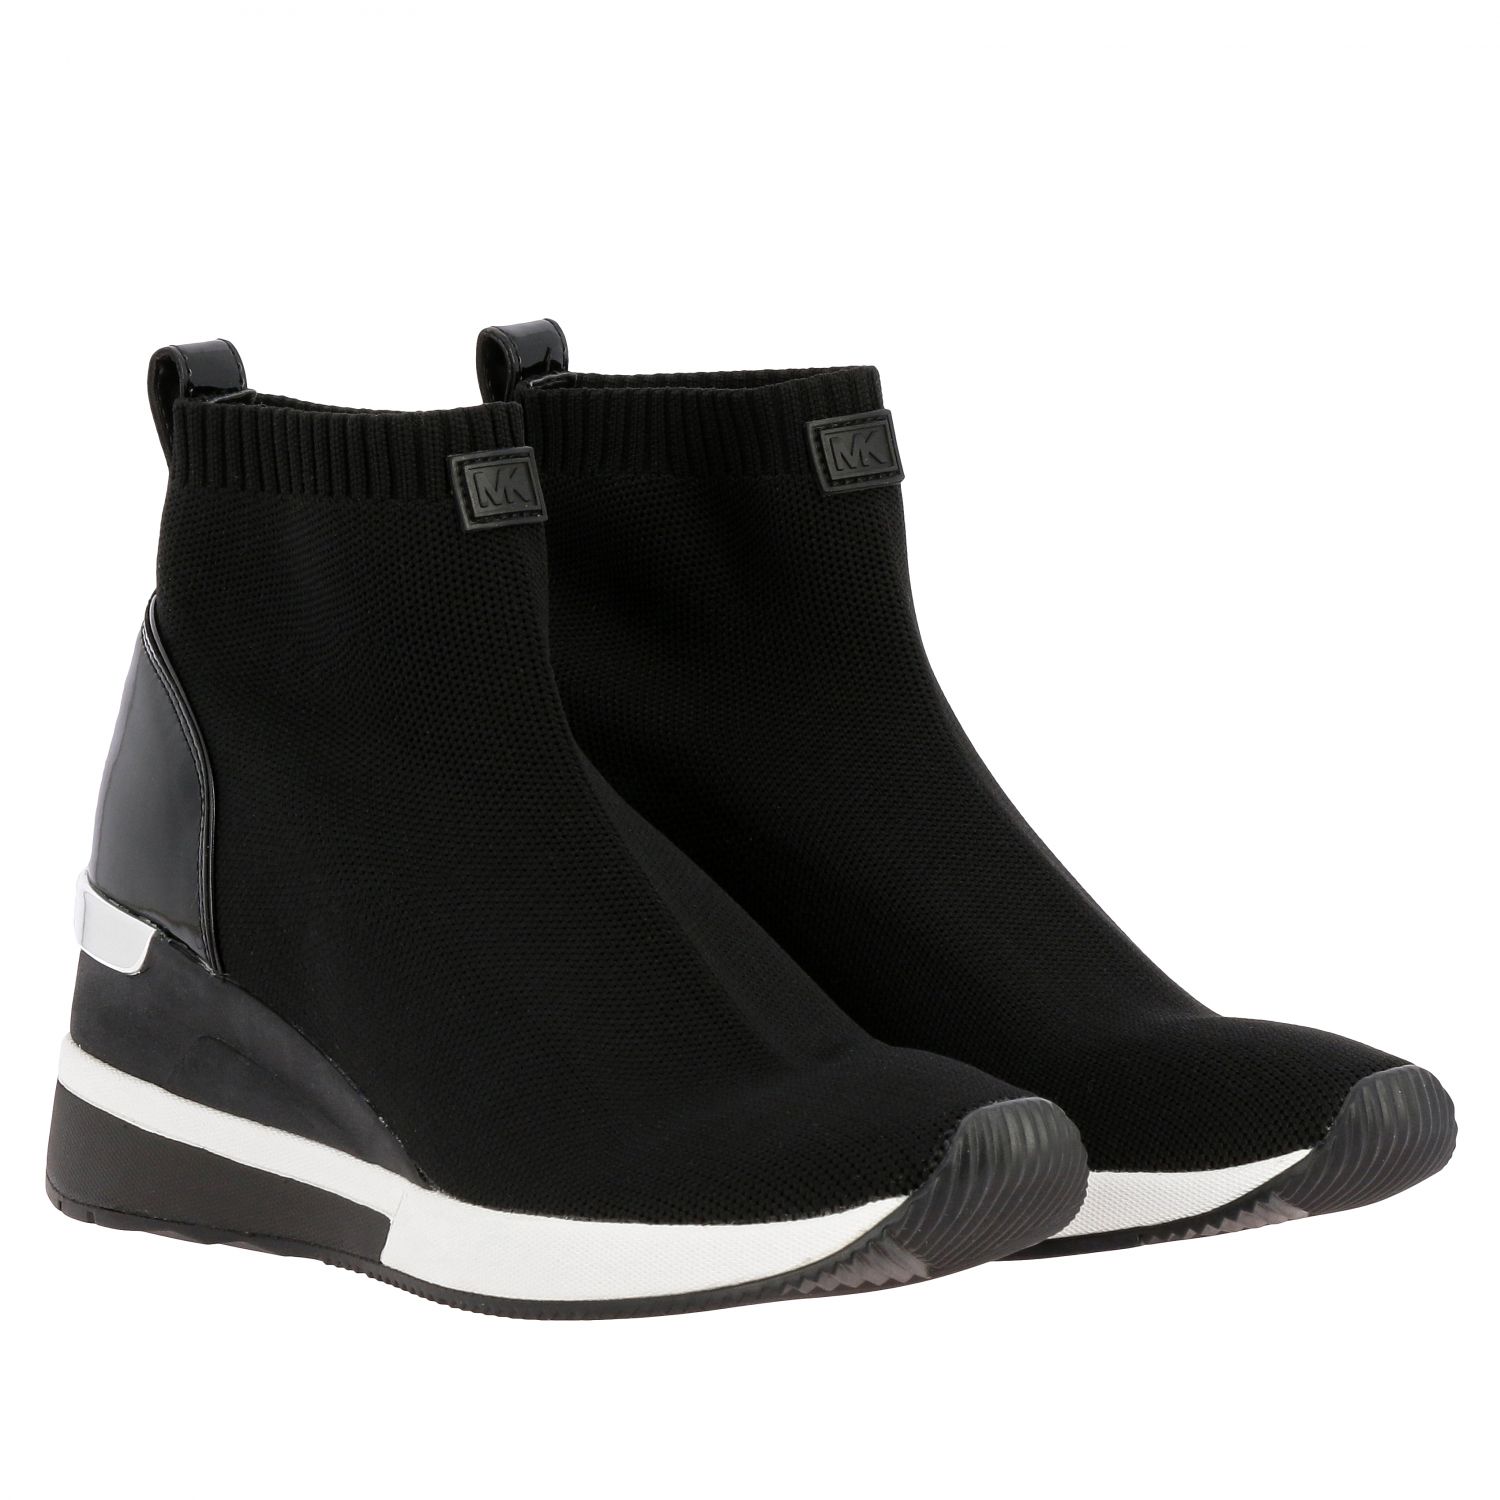 Michael Kors Outlet: Michael slip on Sneakers - Black | Sneakers ...